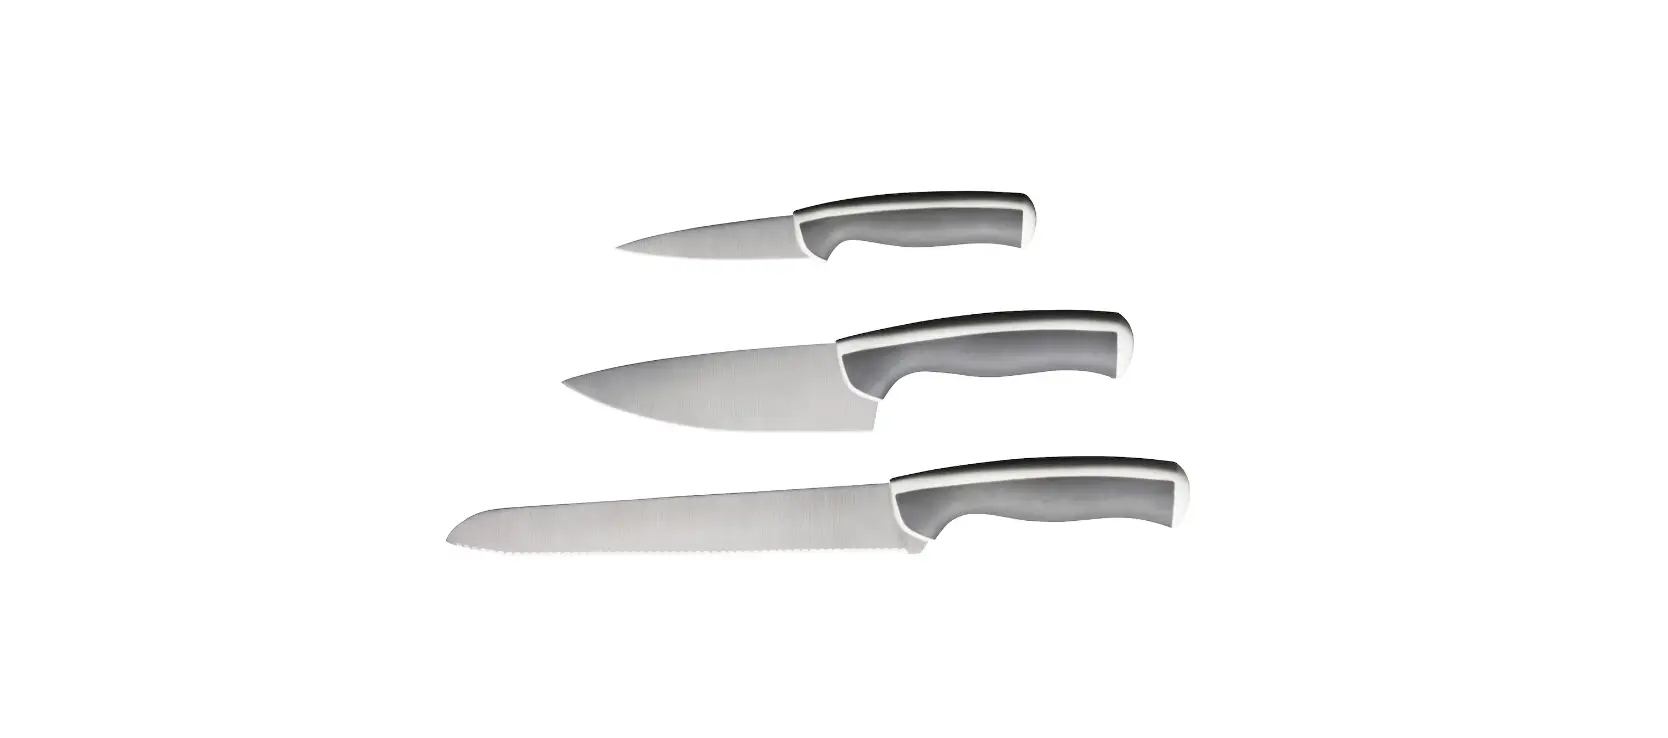 ÄNDLIG 3-Piece Knife Set